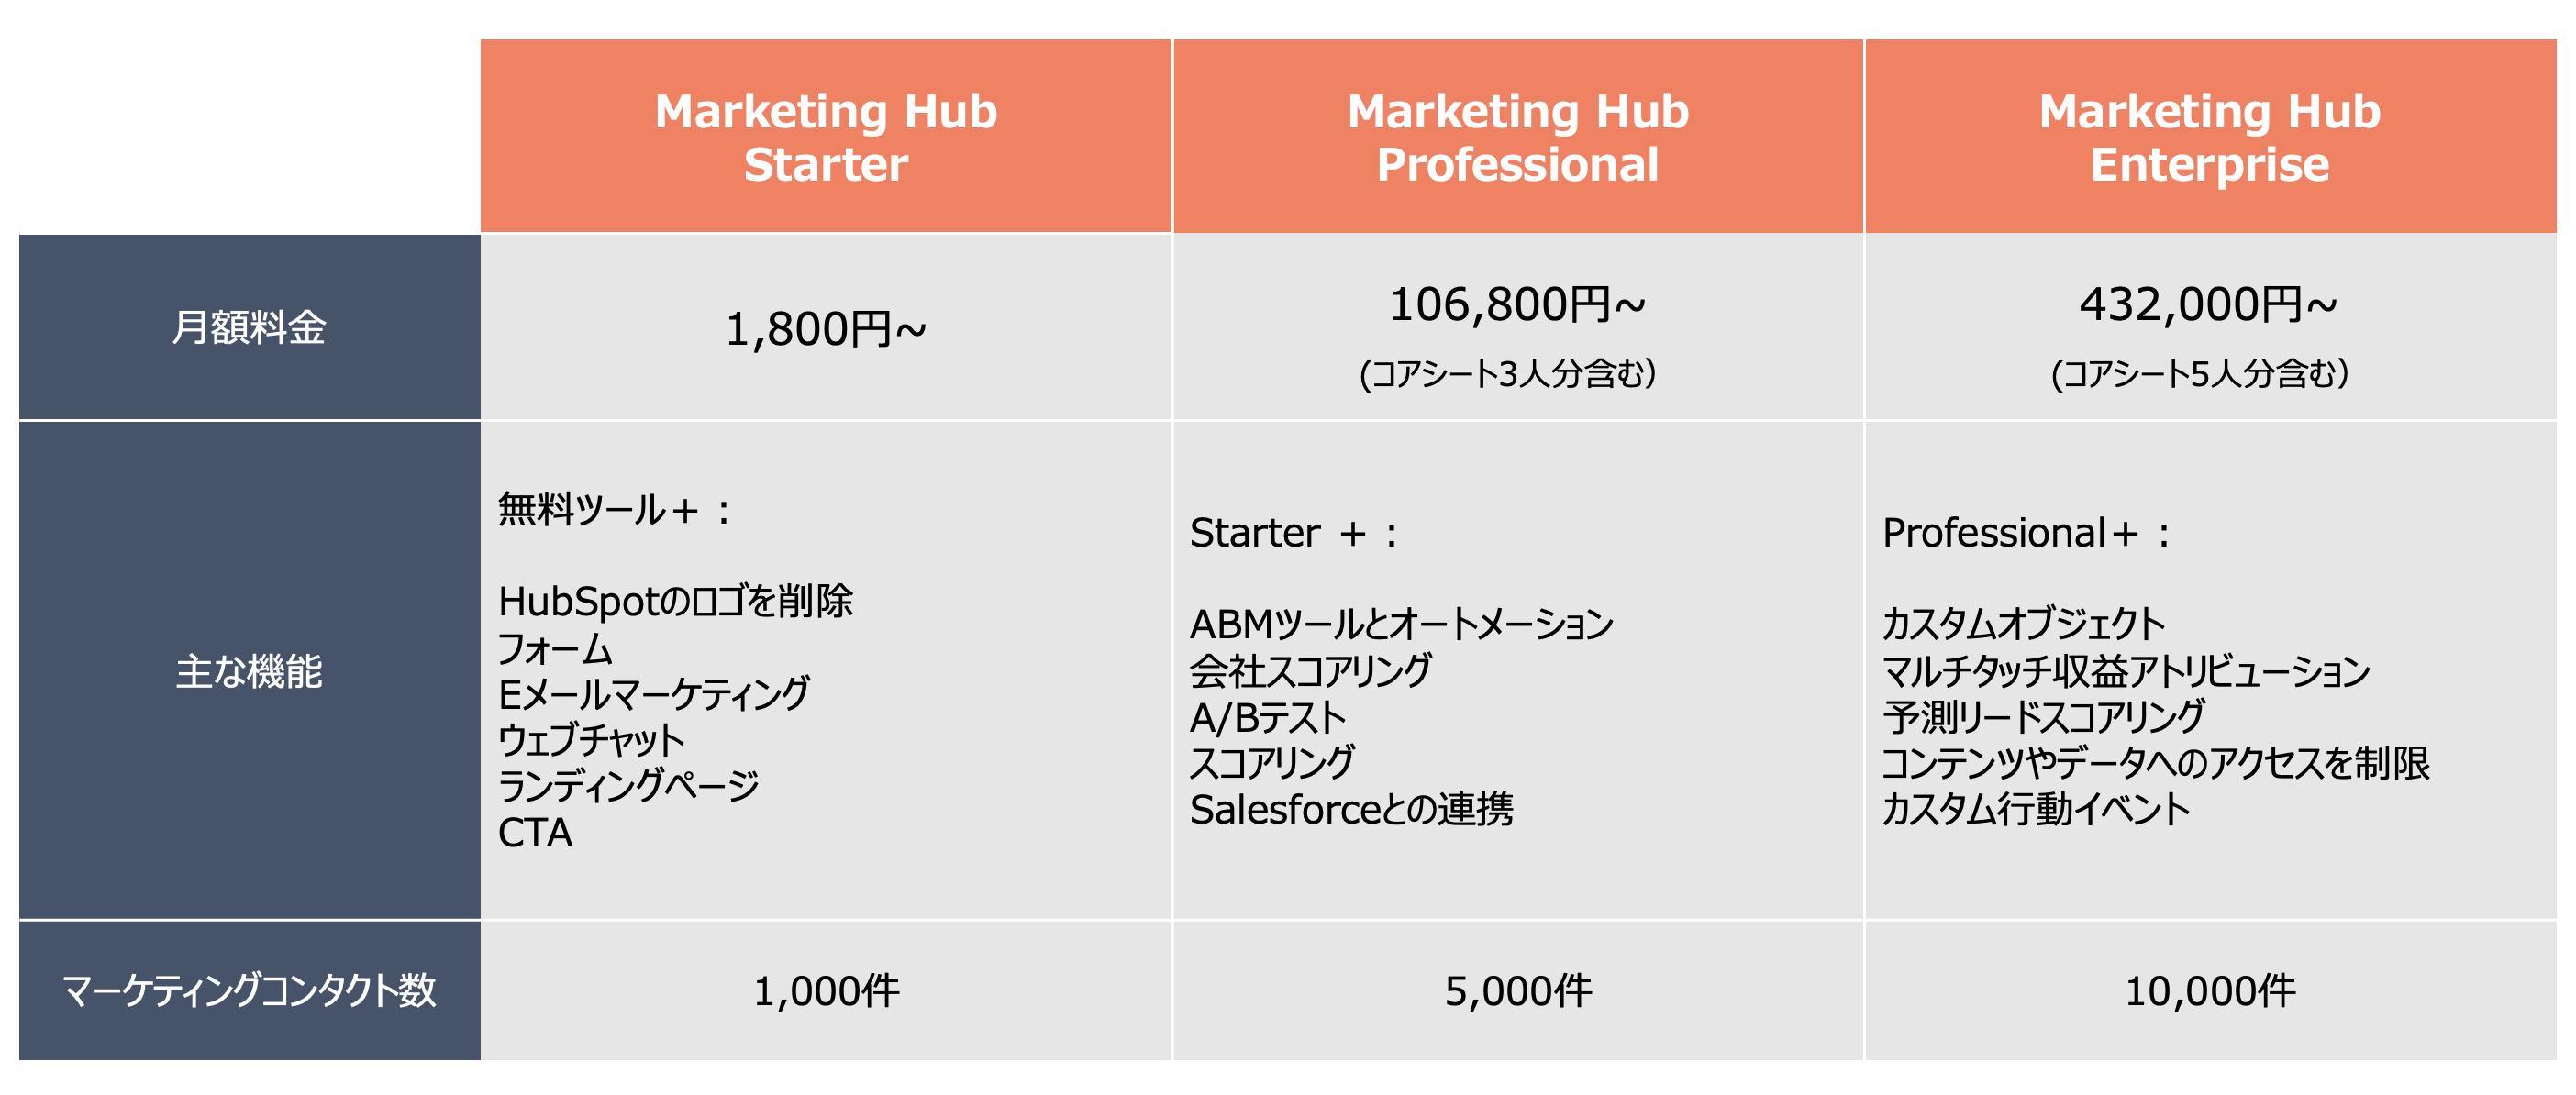 HubSpot Marketing Hub 料金プラン